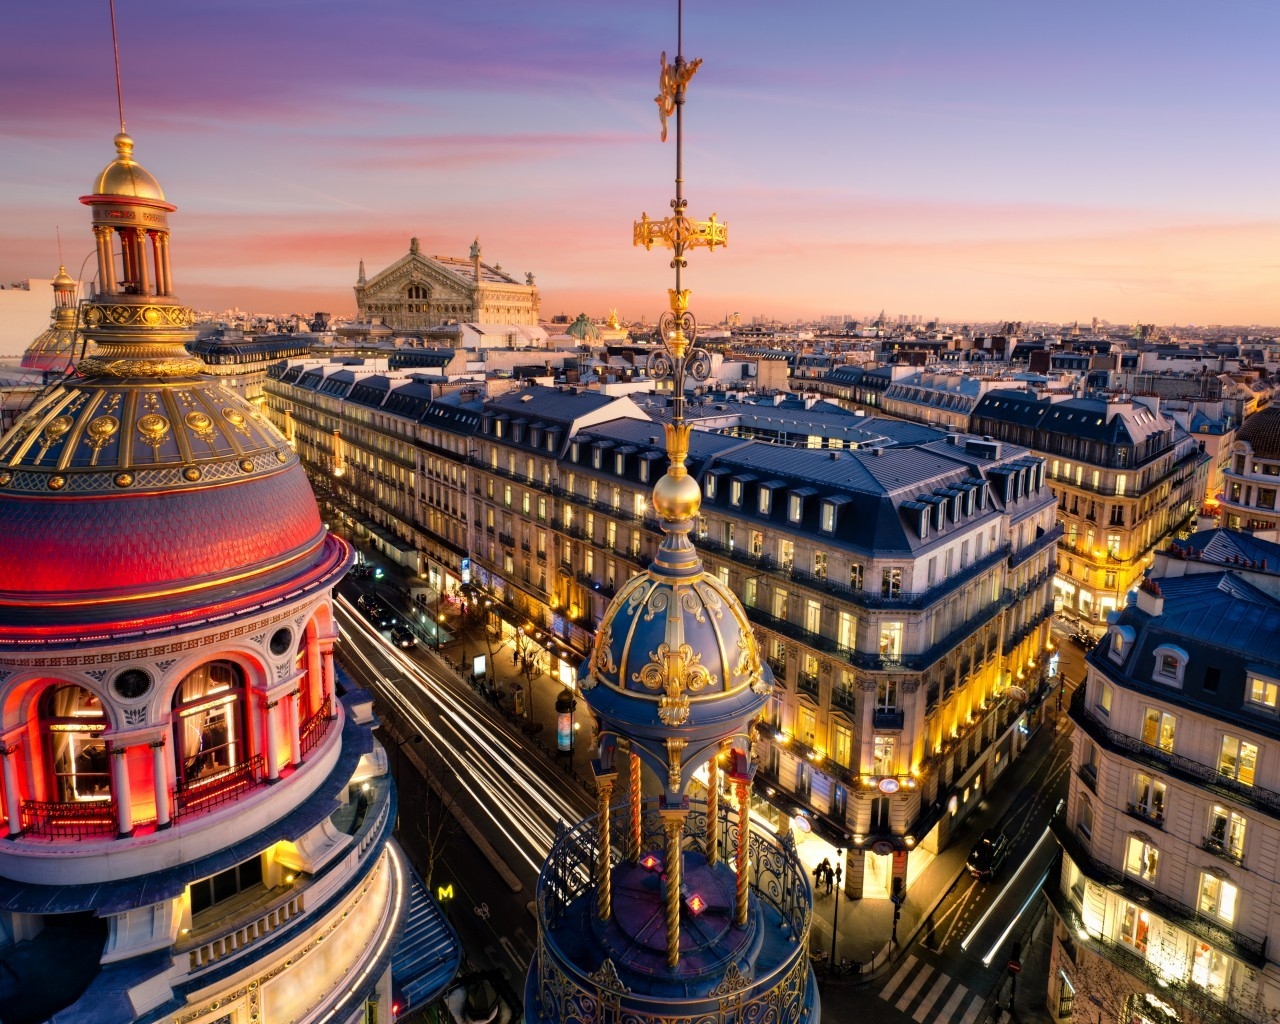 Grand Opera Paris for 1280 x 1024 resolution